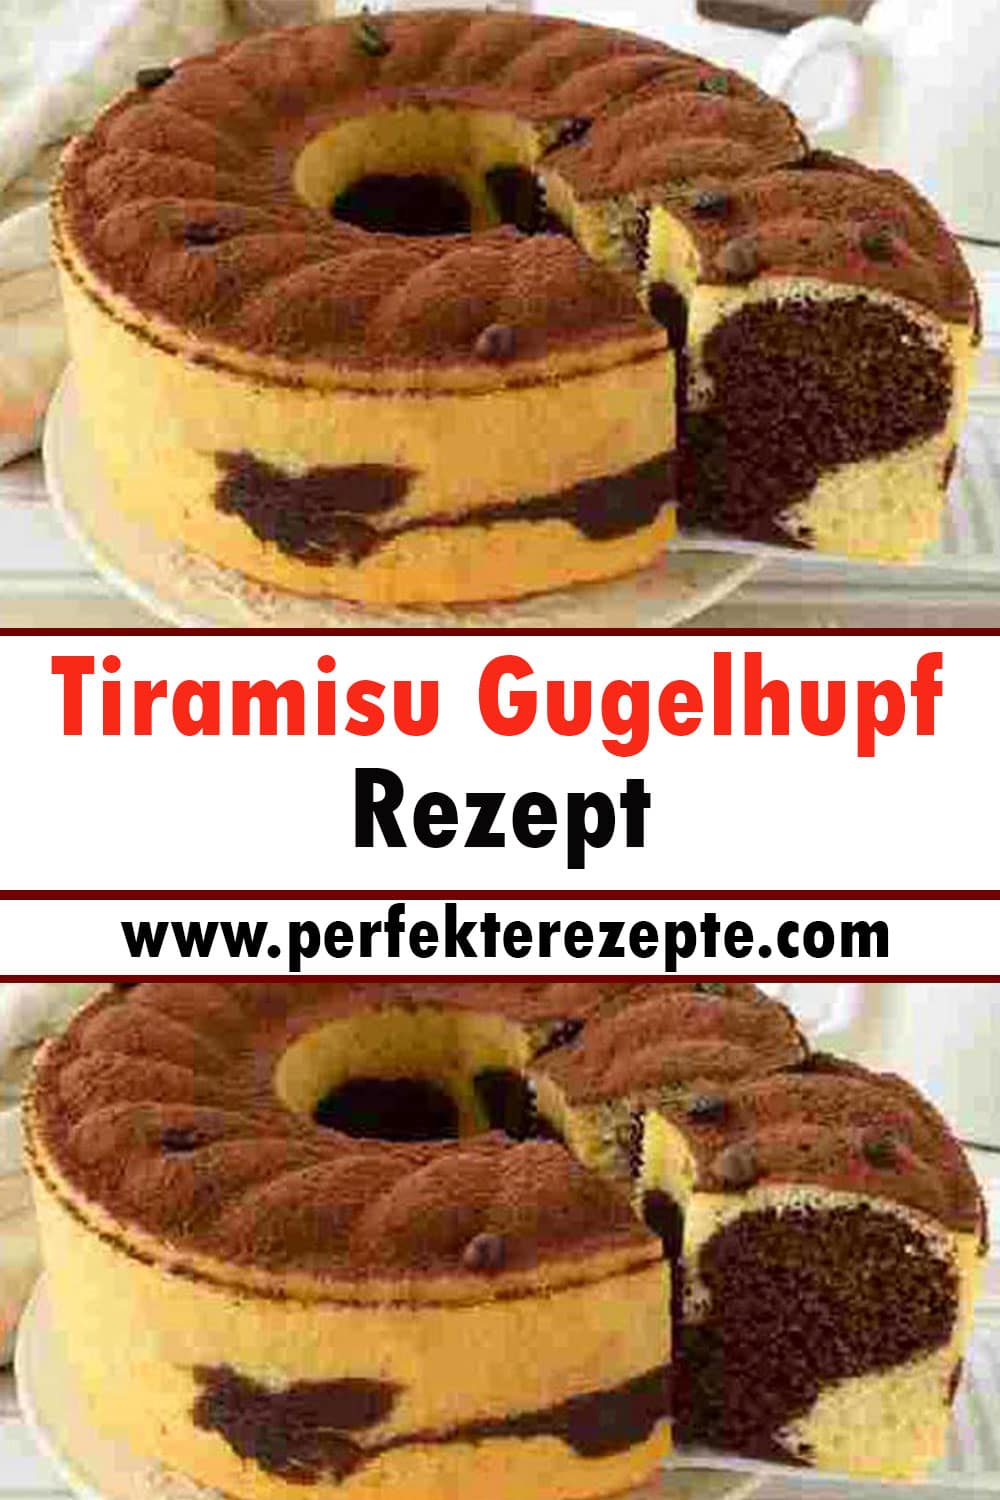 Tiramisu Gugelhupf Rezept